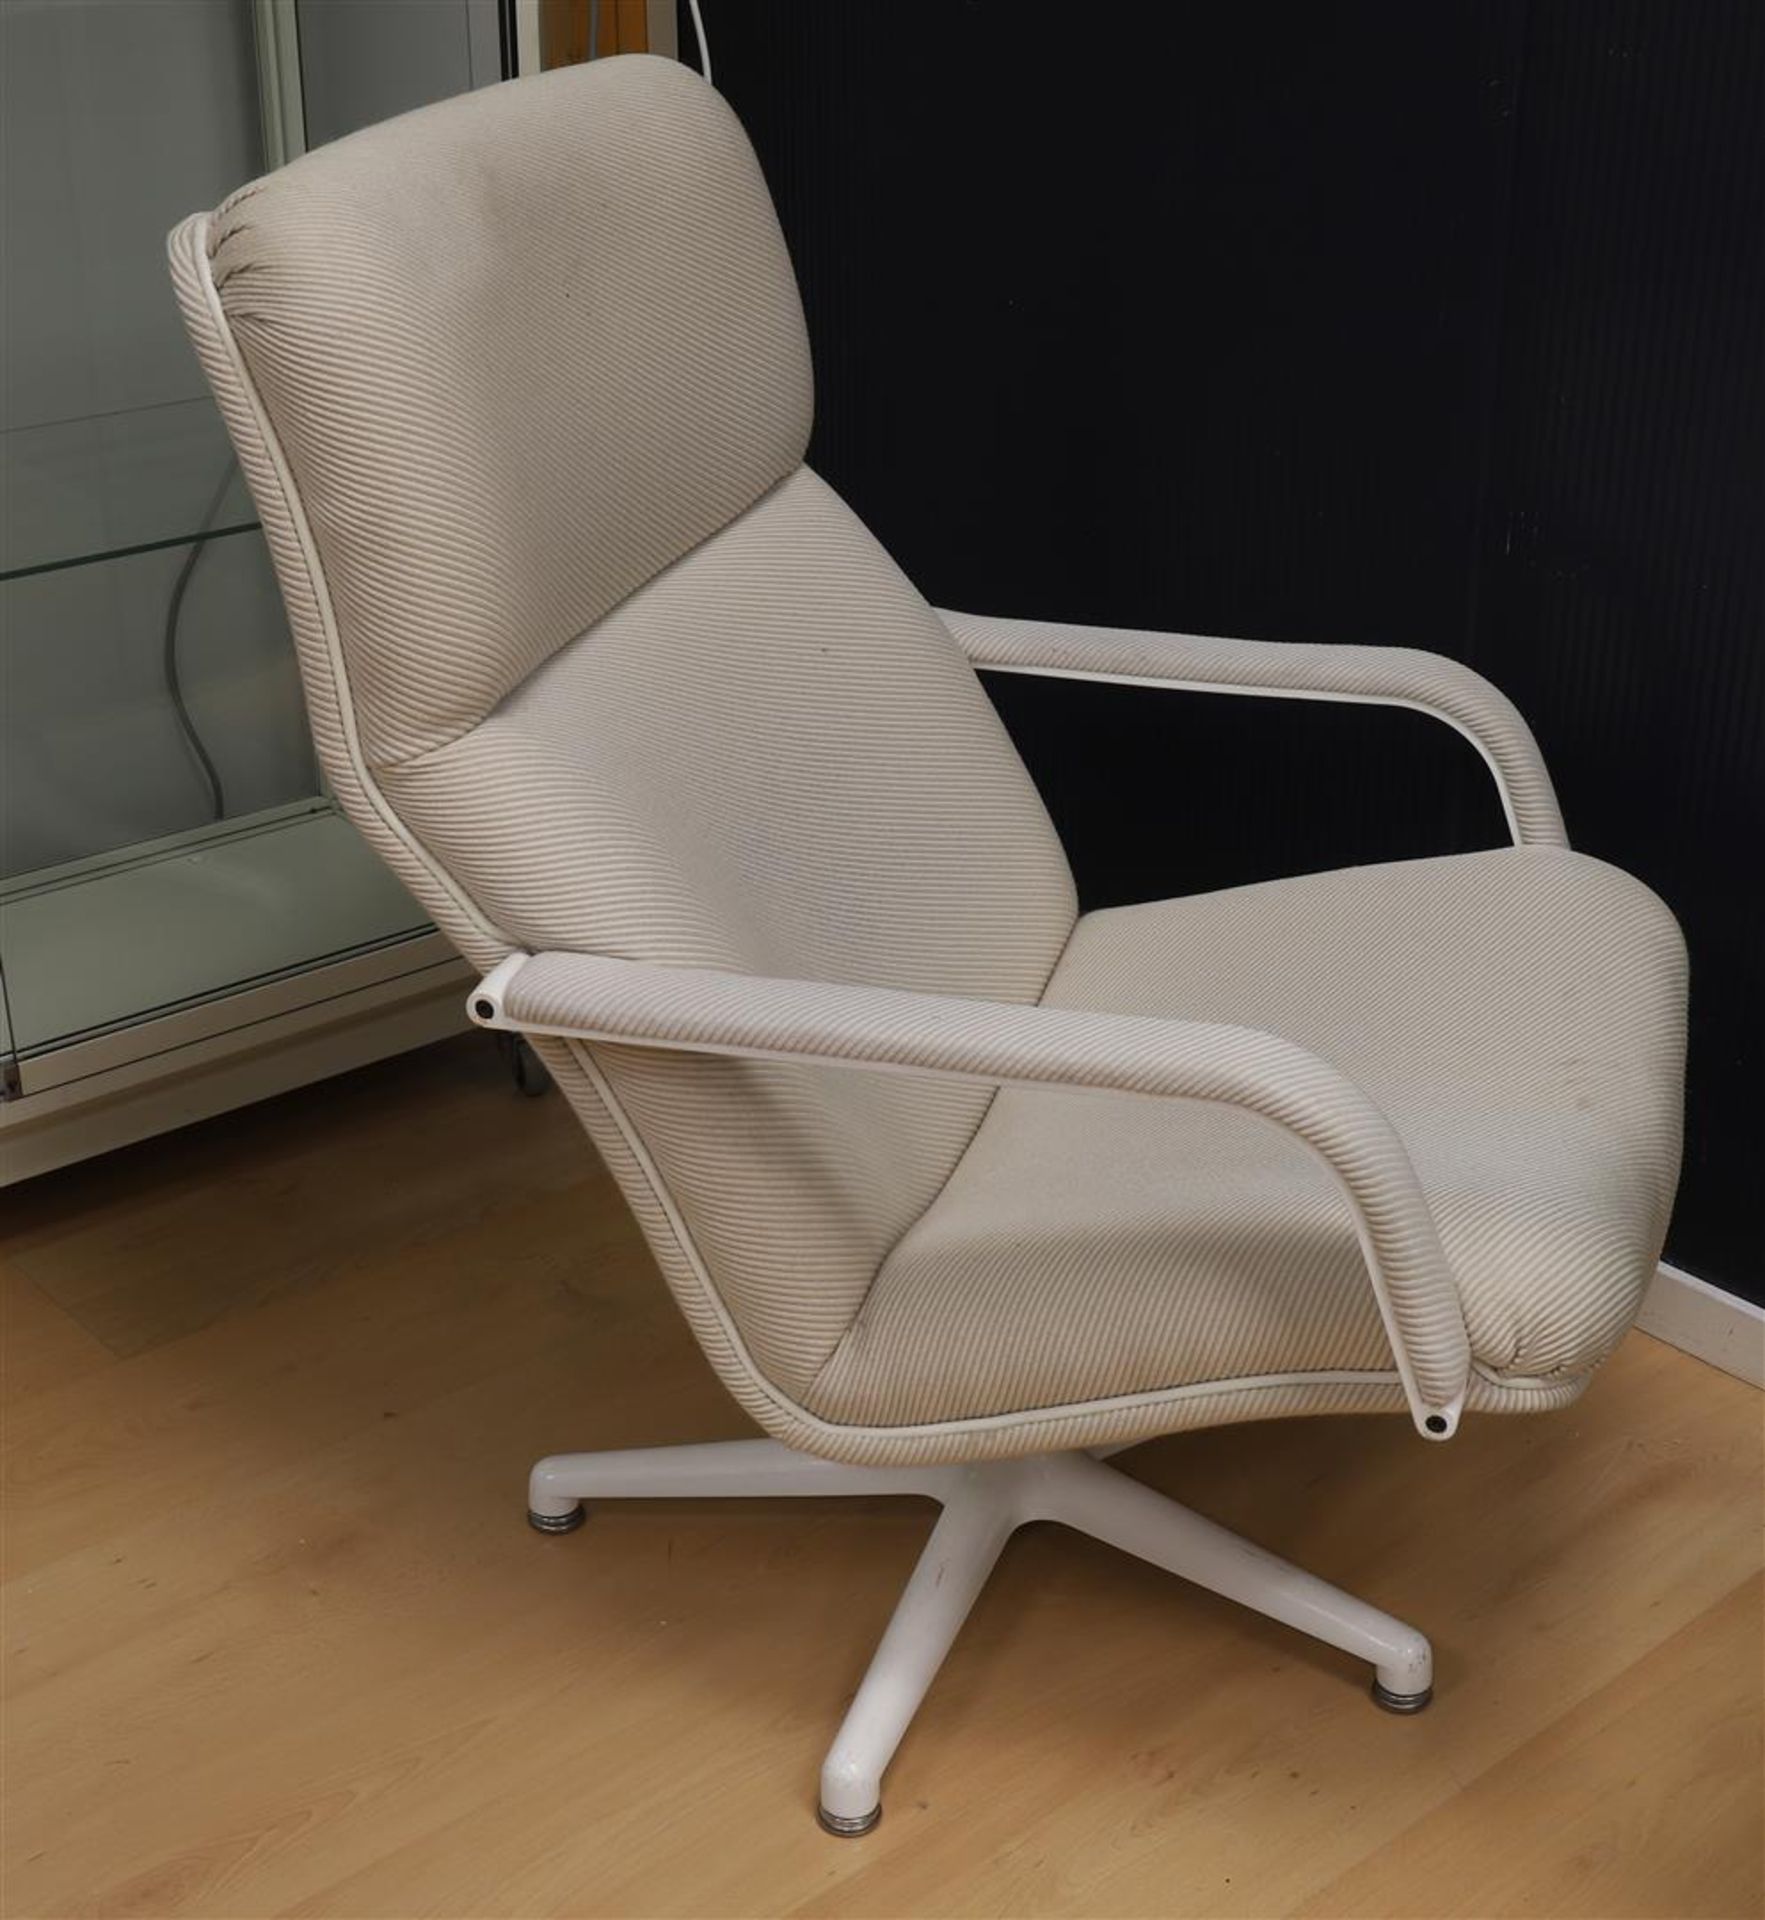 A white fabric Artifort F141 armrest chair, design: Geoffry David Harcourt. - Bild 2 aus 2